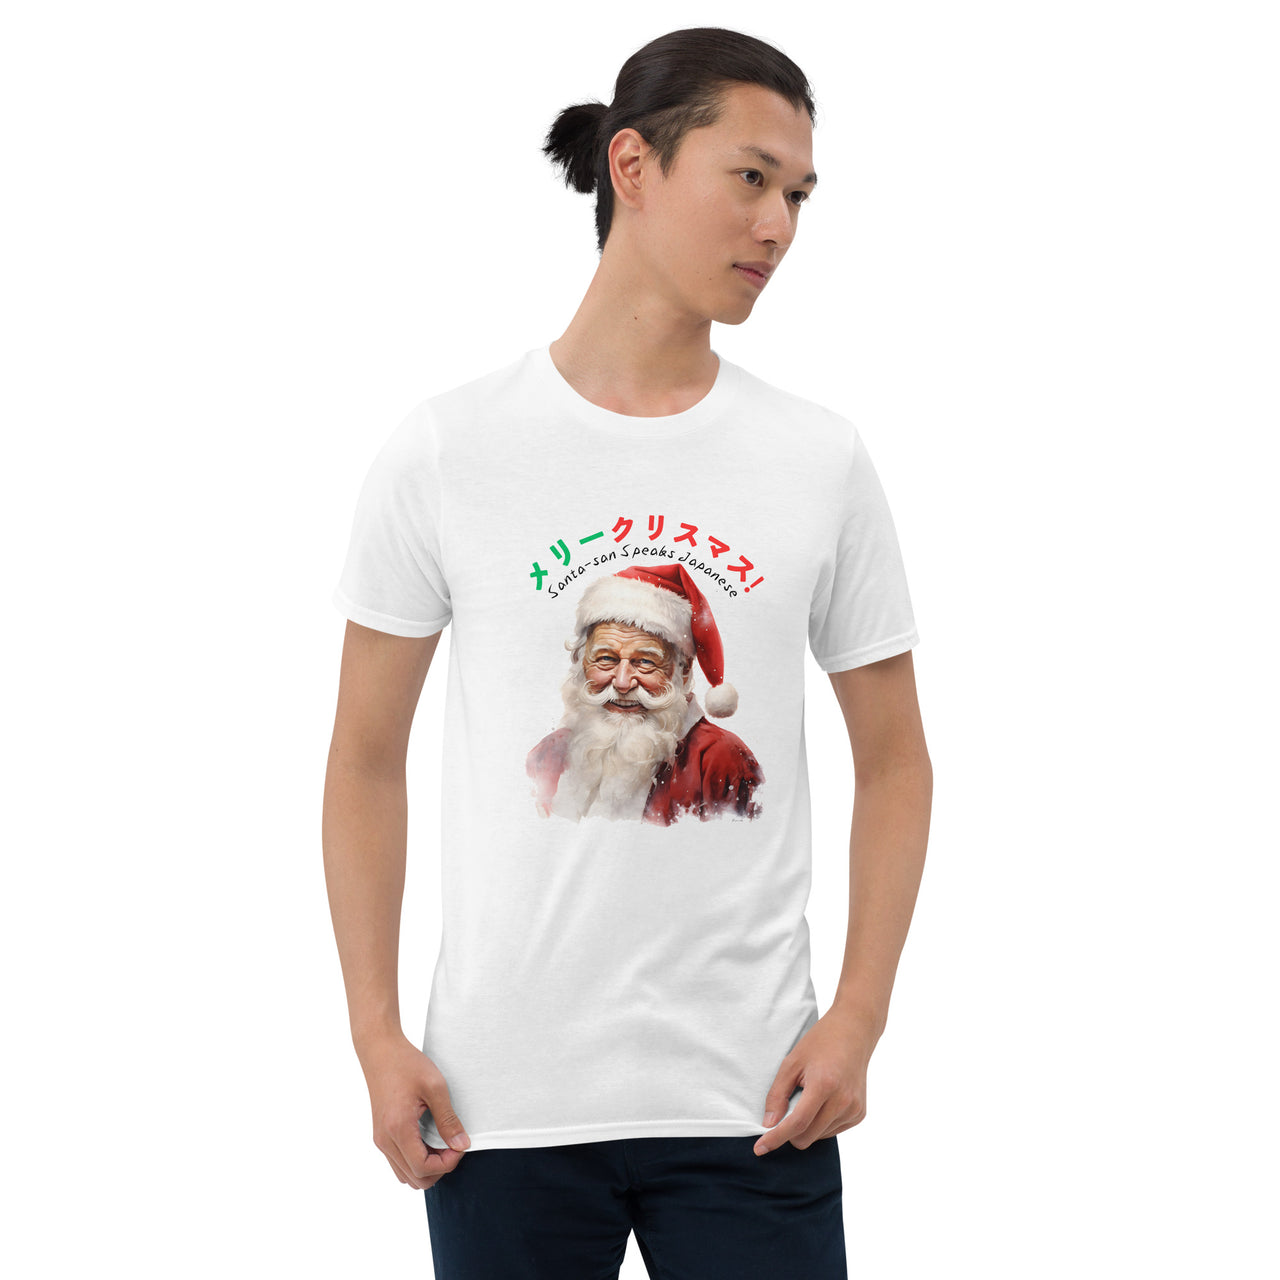 Santa-san Speaks Japanese T-Shirt